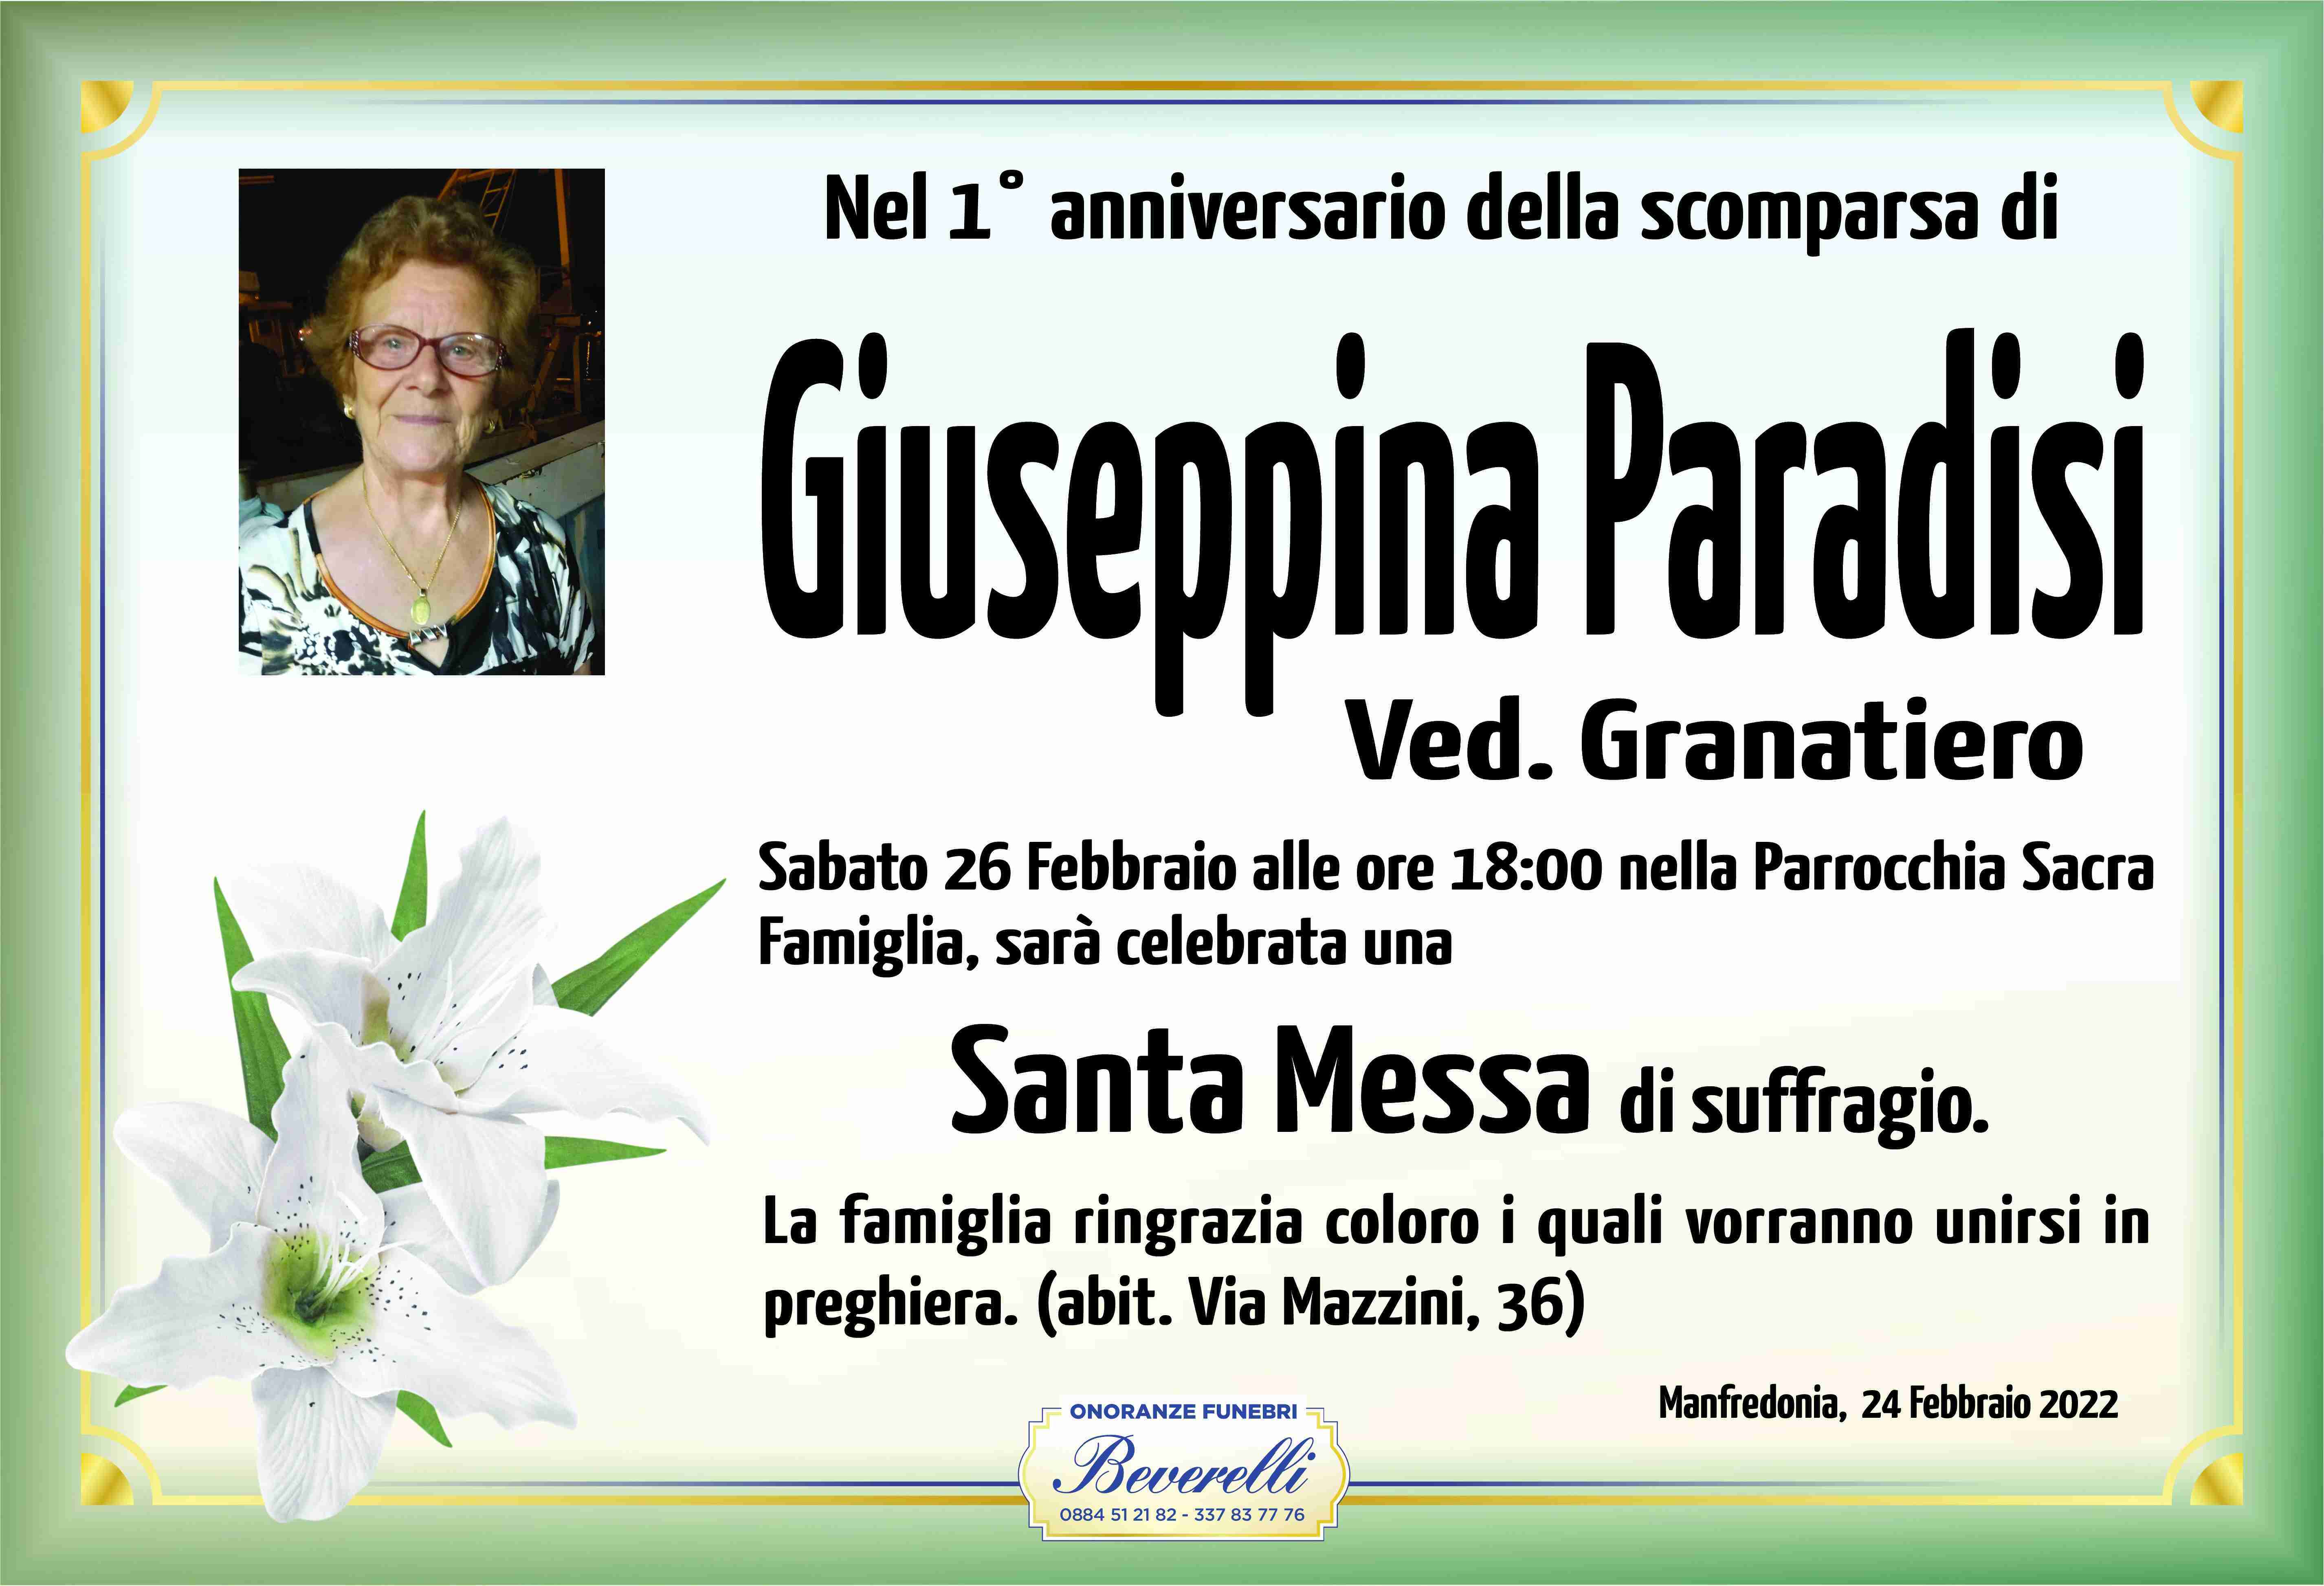 Giuseppina Paradisi